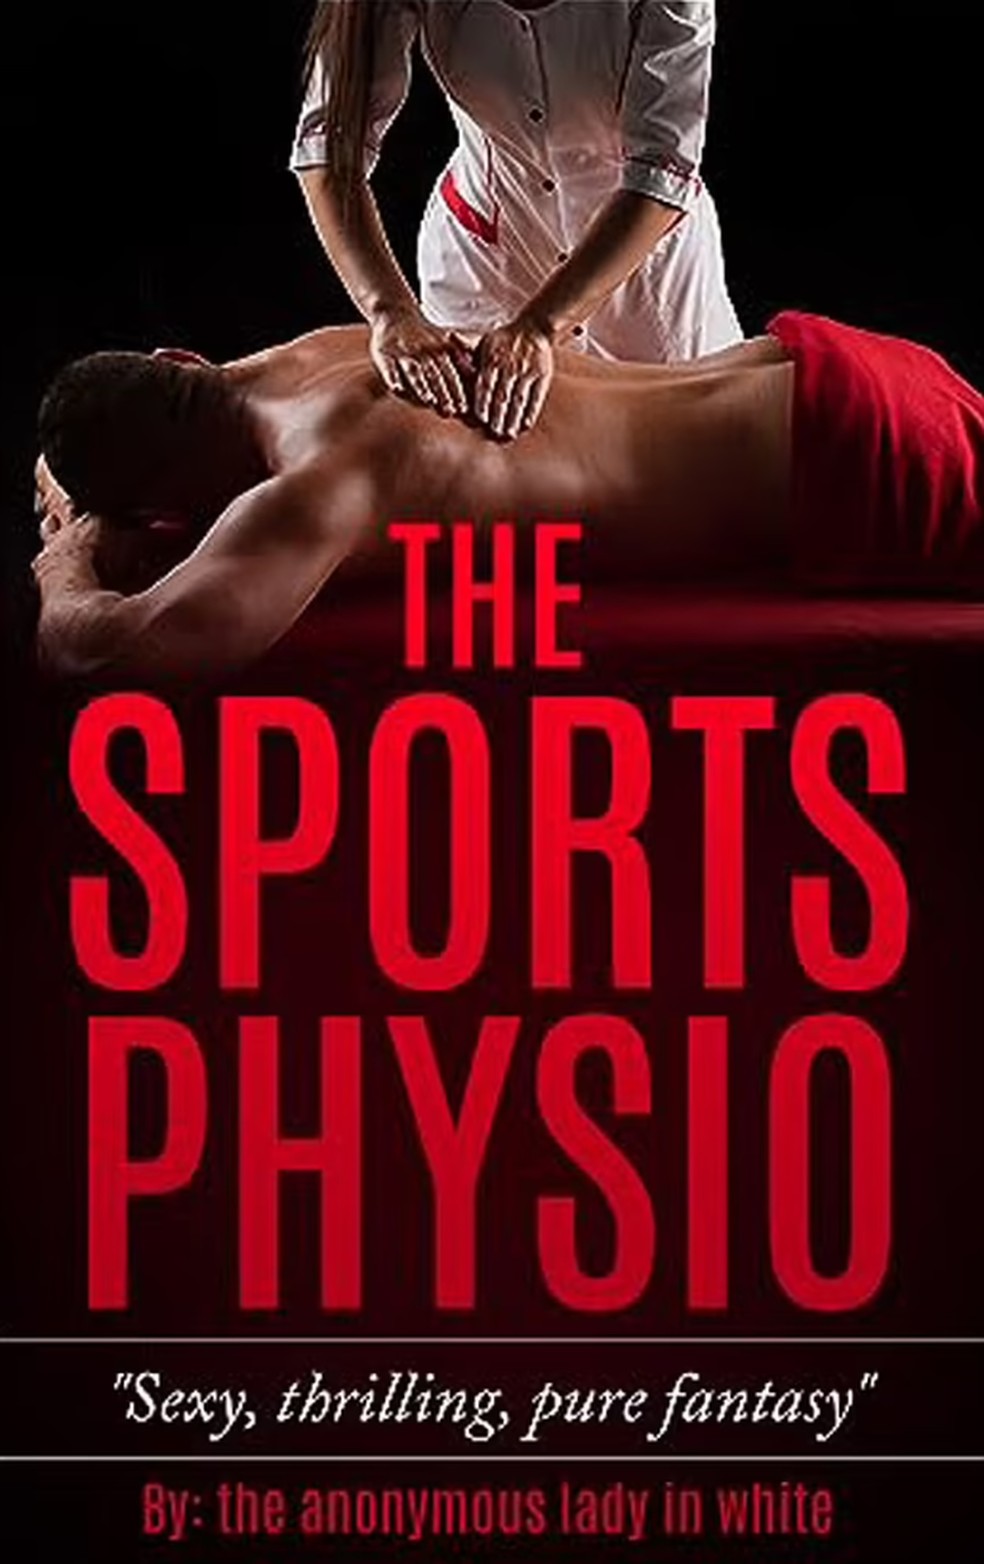 Capa do livro 'The Sports Physio' — Foto: Divulgação